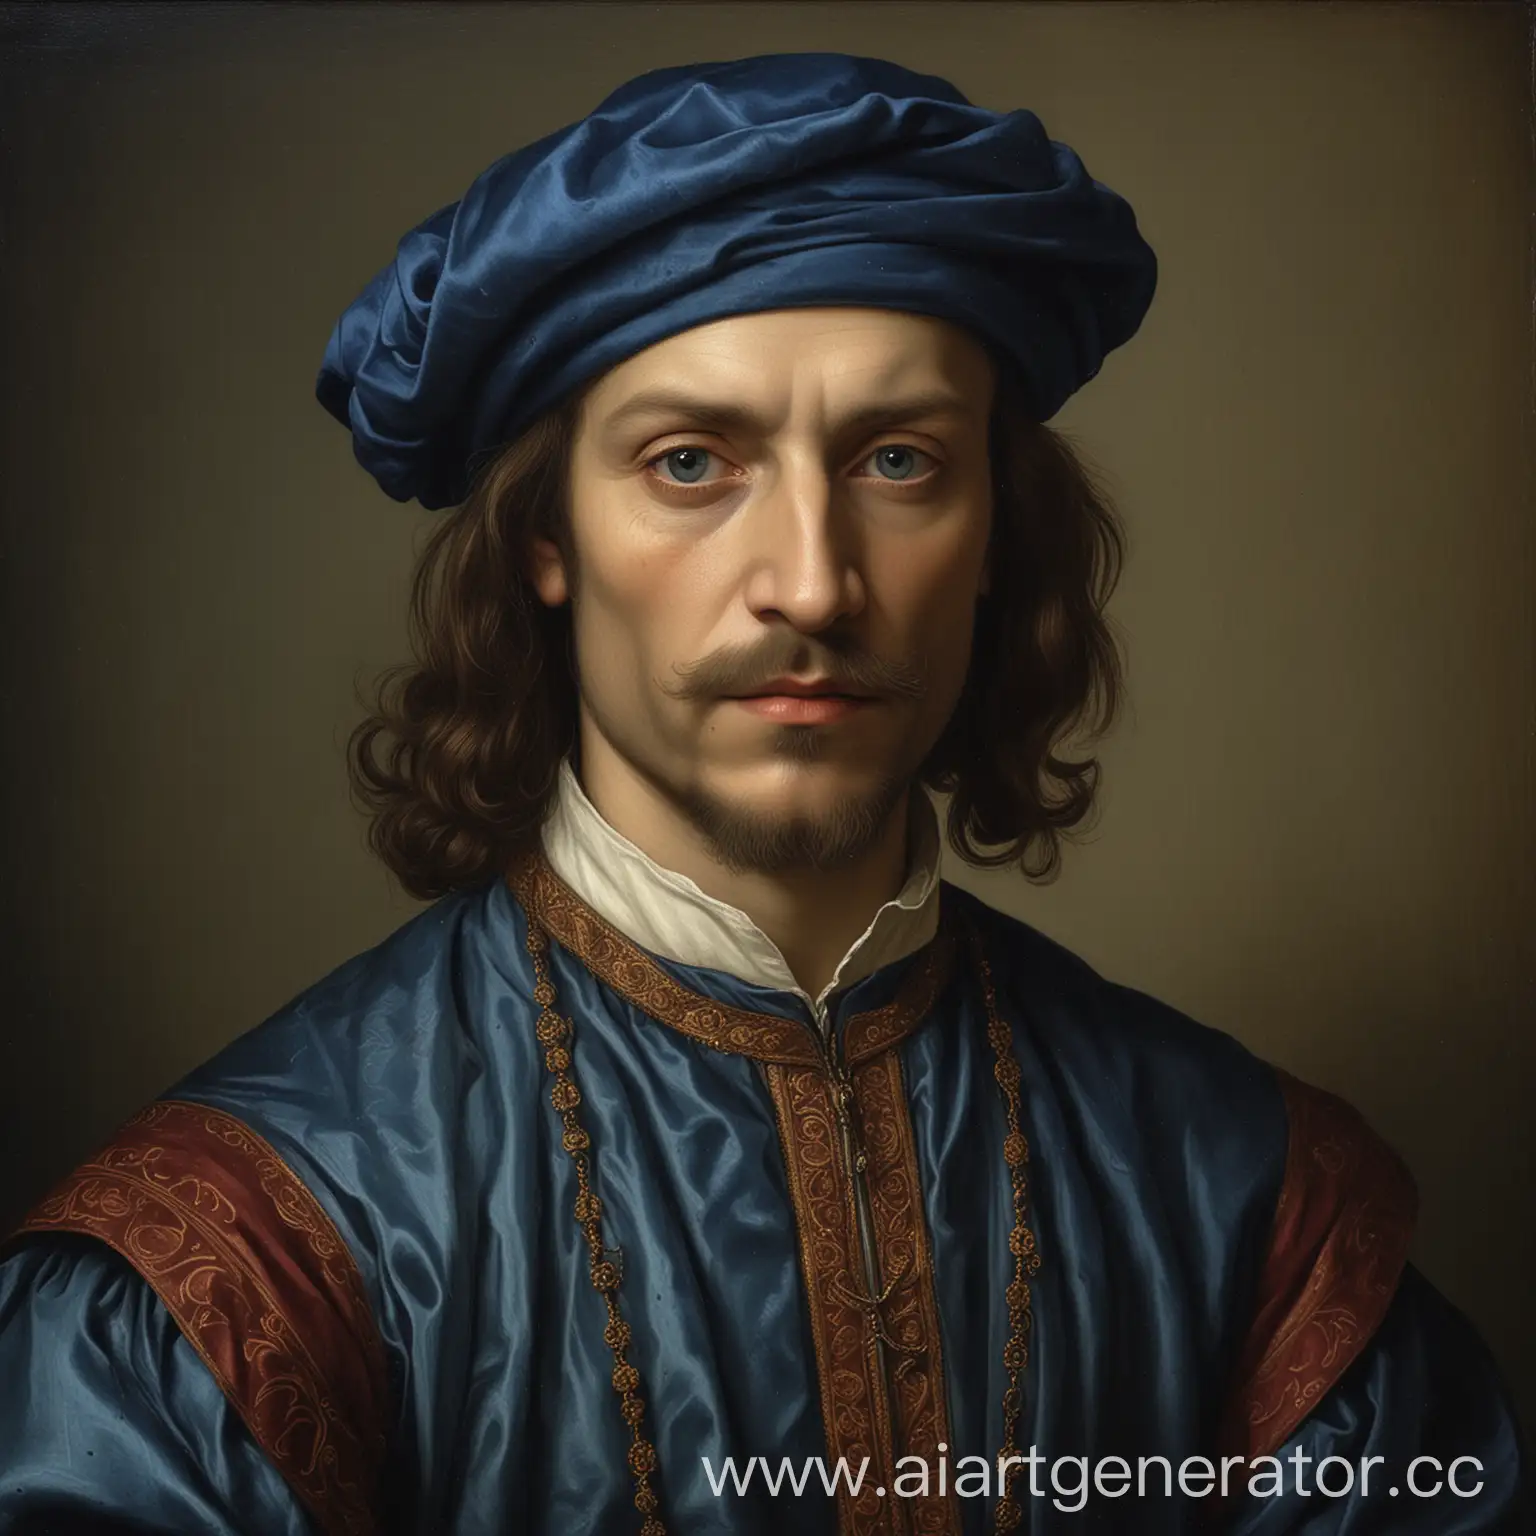 Blue-Plum-Renaissance-Nobleman-Portrait-in-da-Vinci-Style